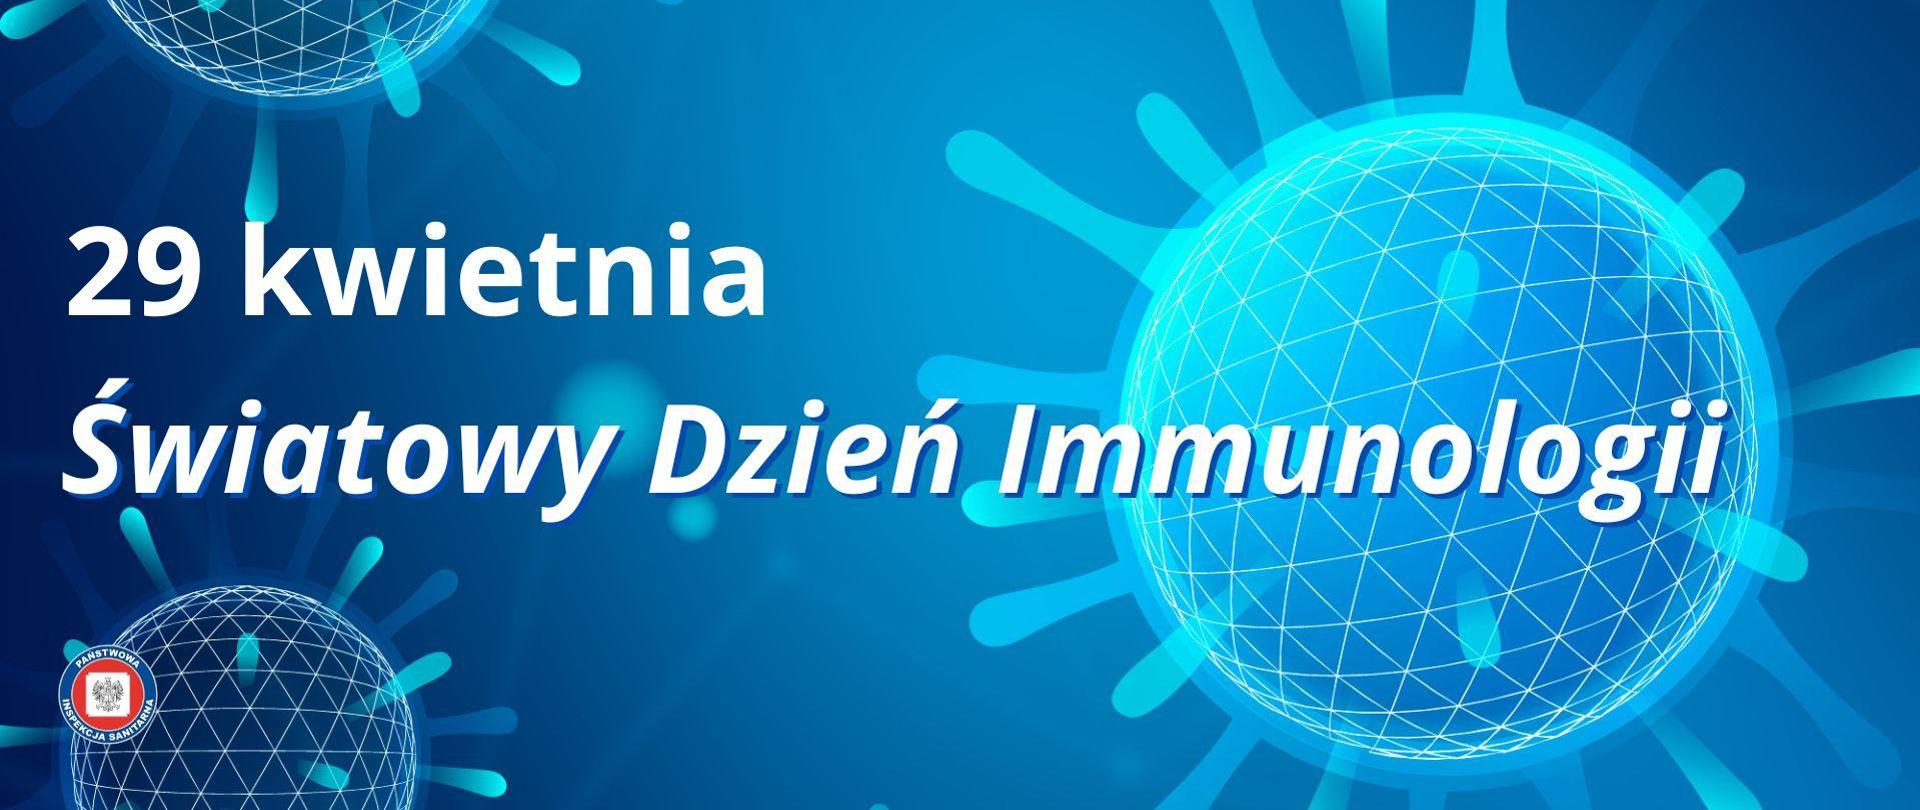 29 kwietnia - Światowy Dzień Immunologii